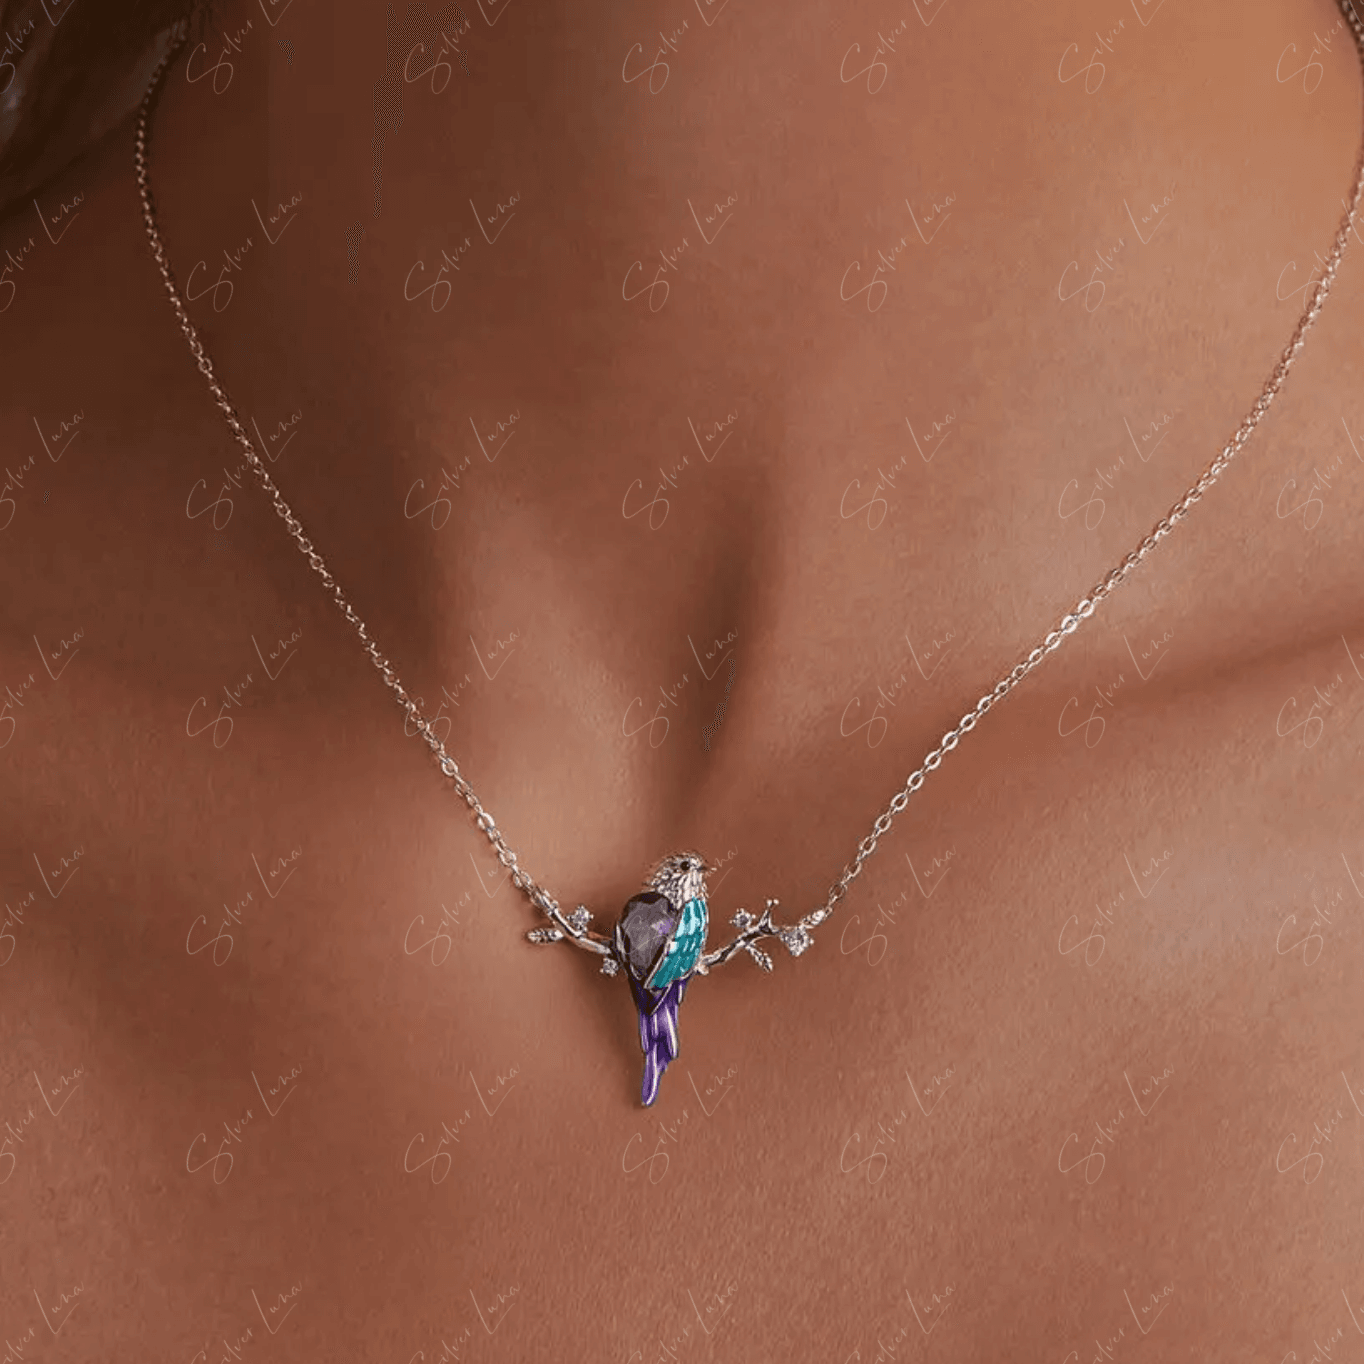 mocking bird pendant necklace